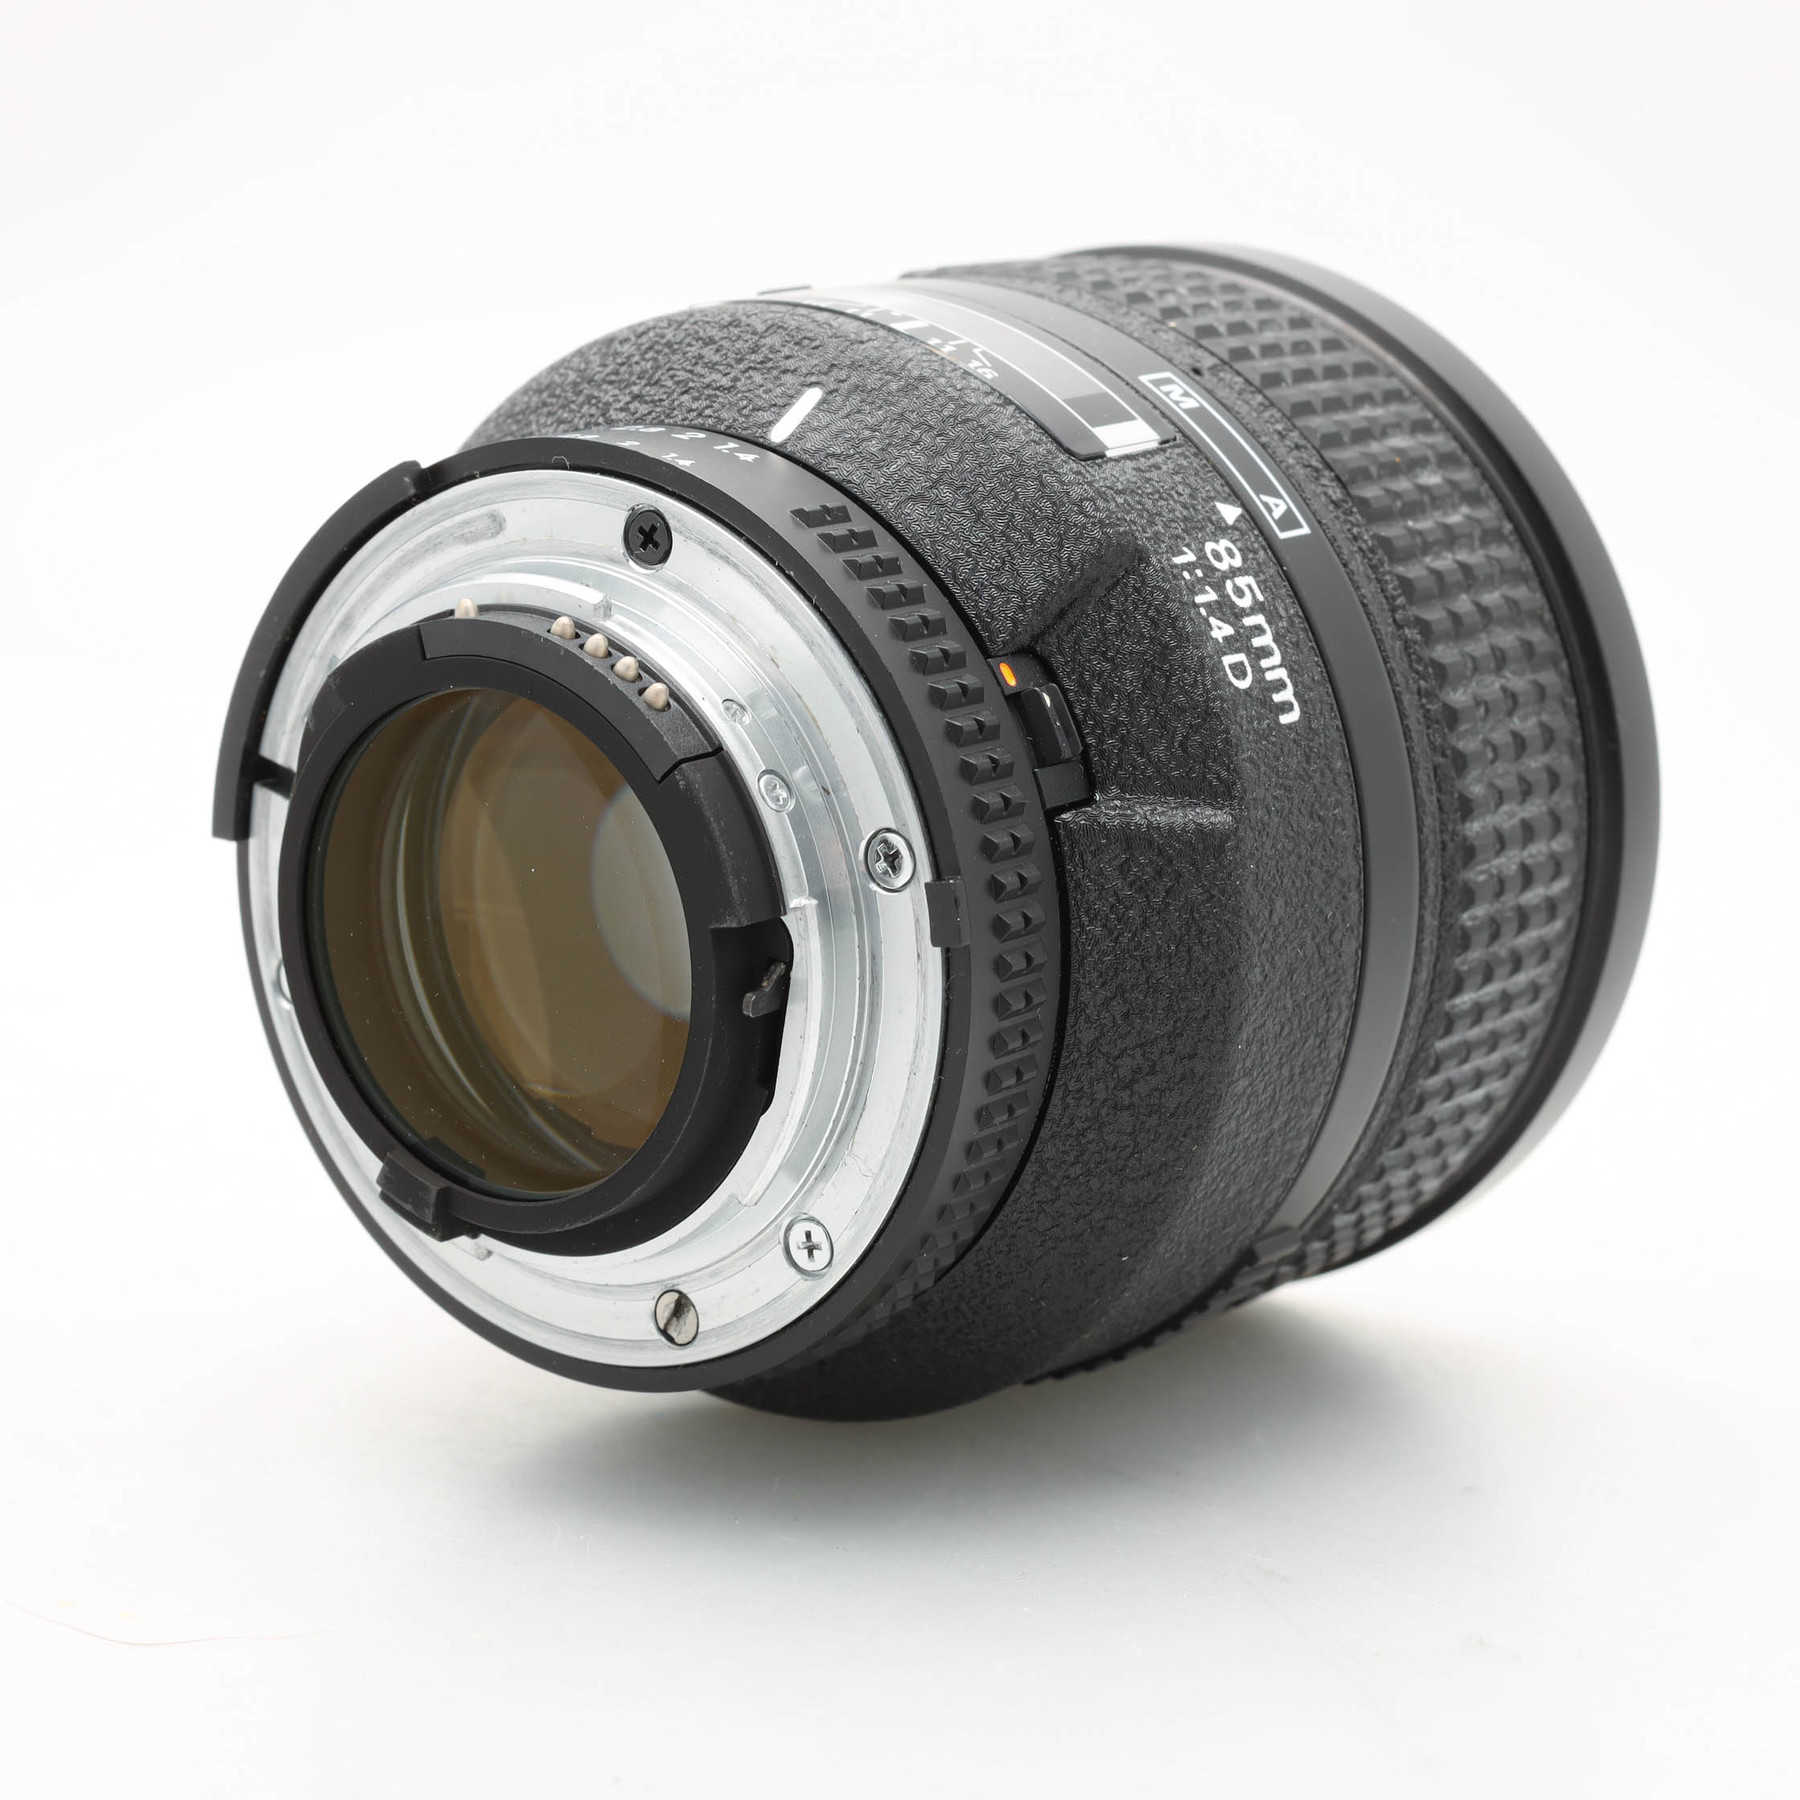 Nikon AF Nikkor 85mm f/1.4D